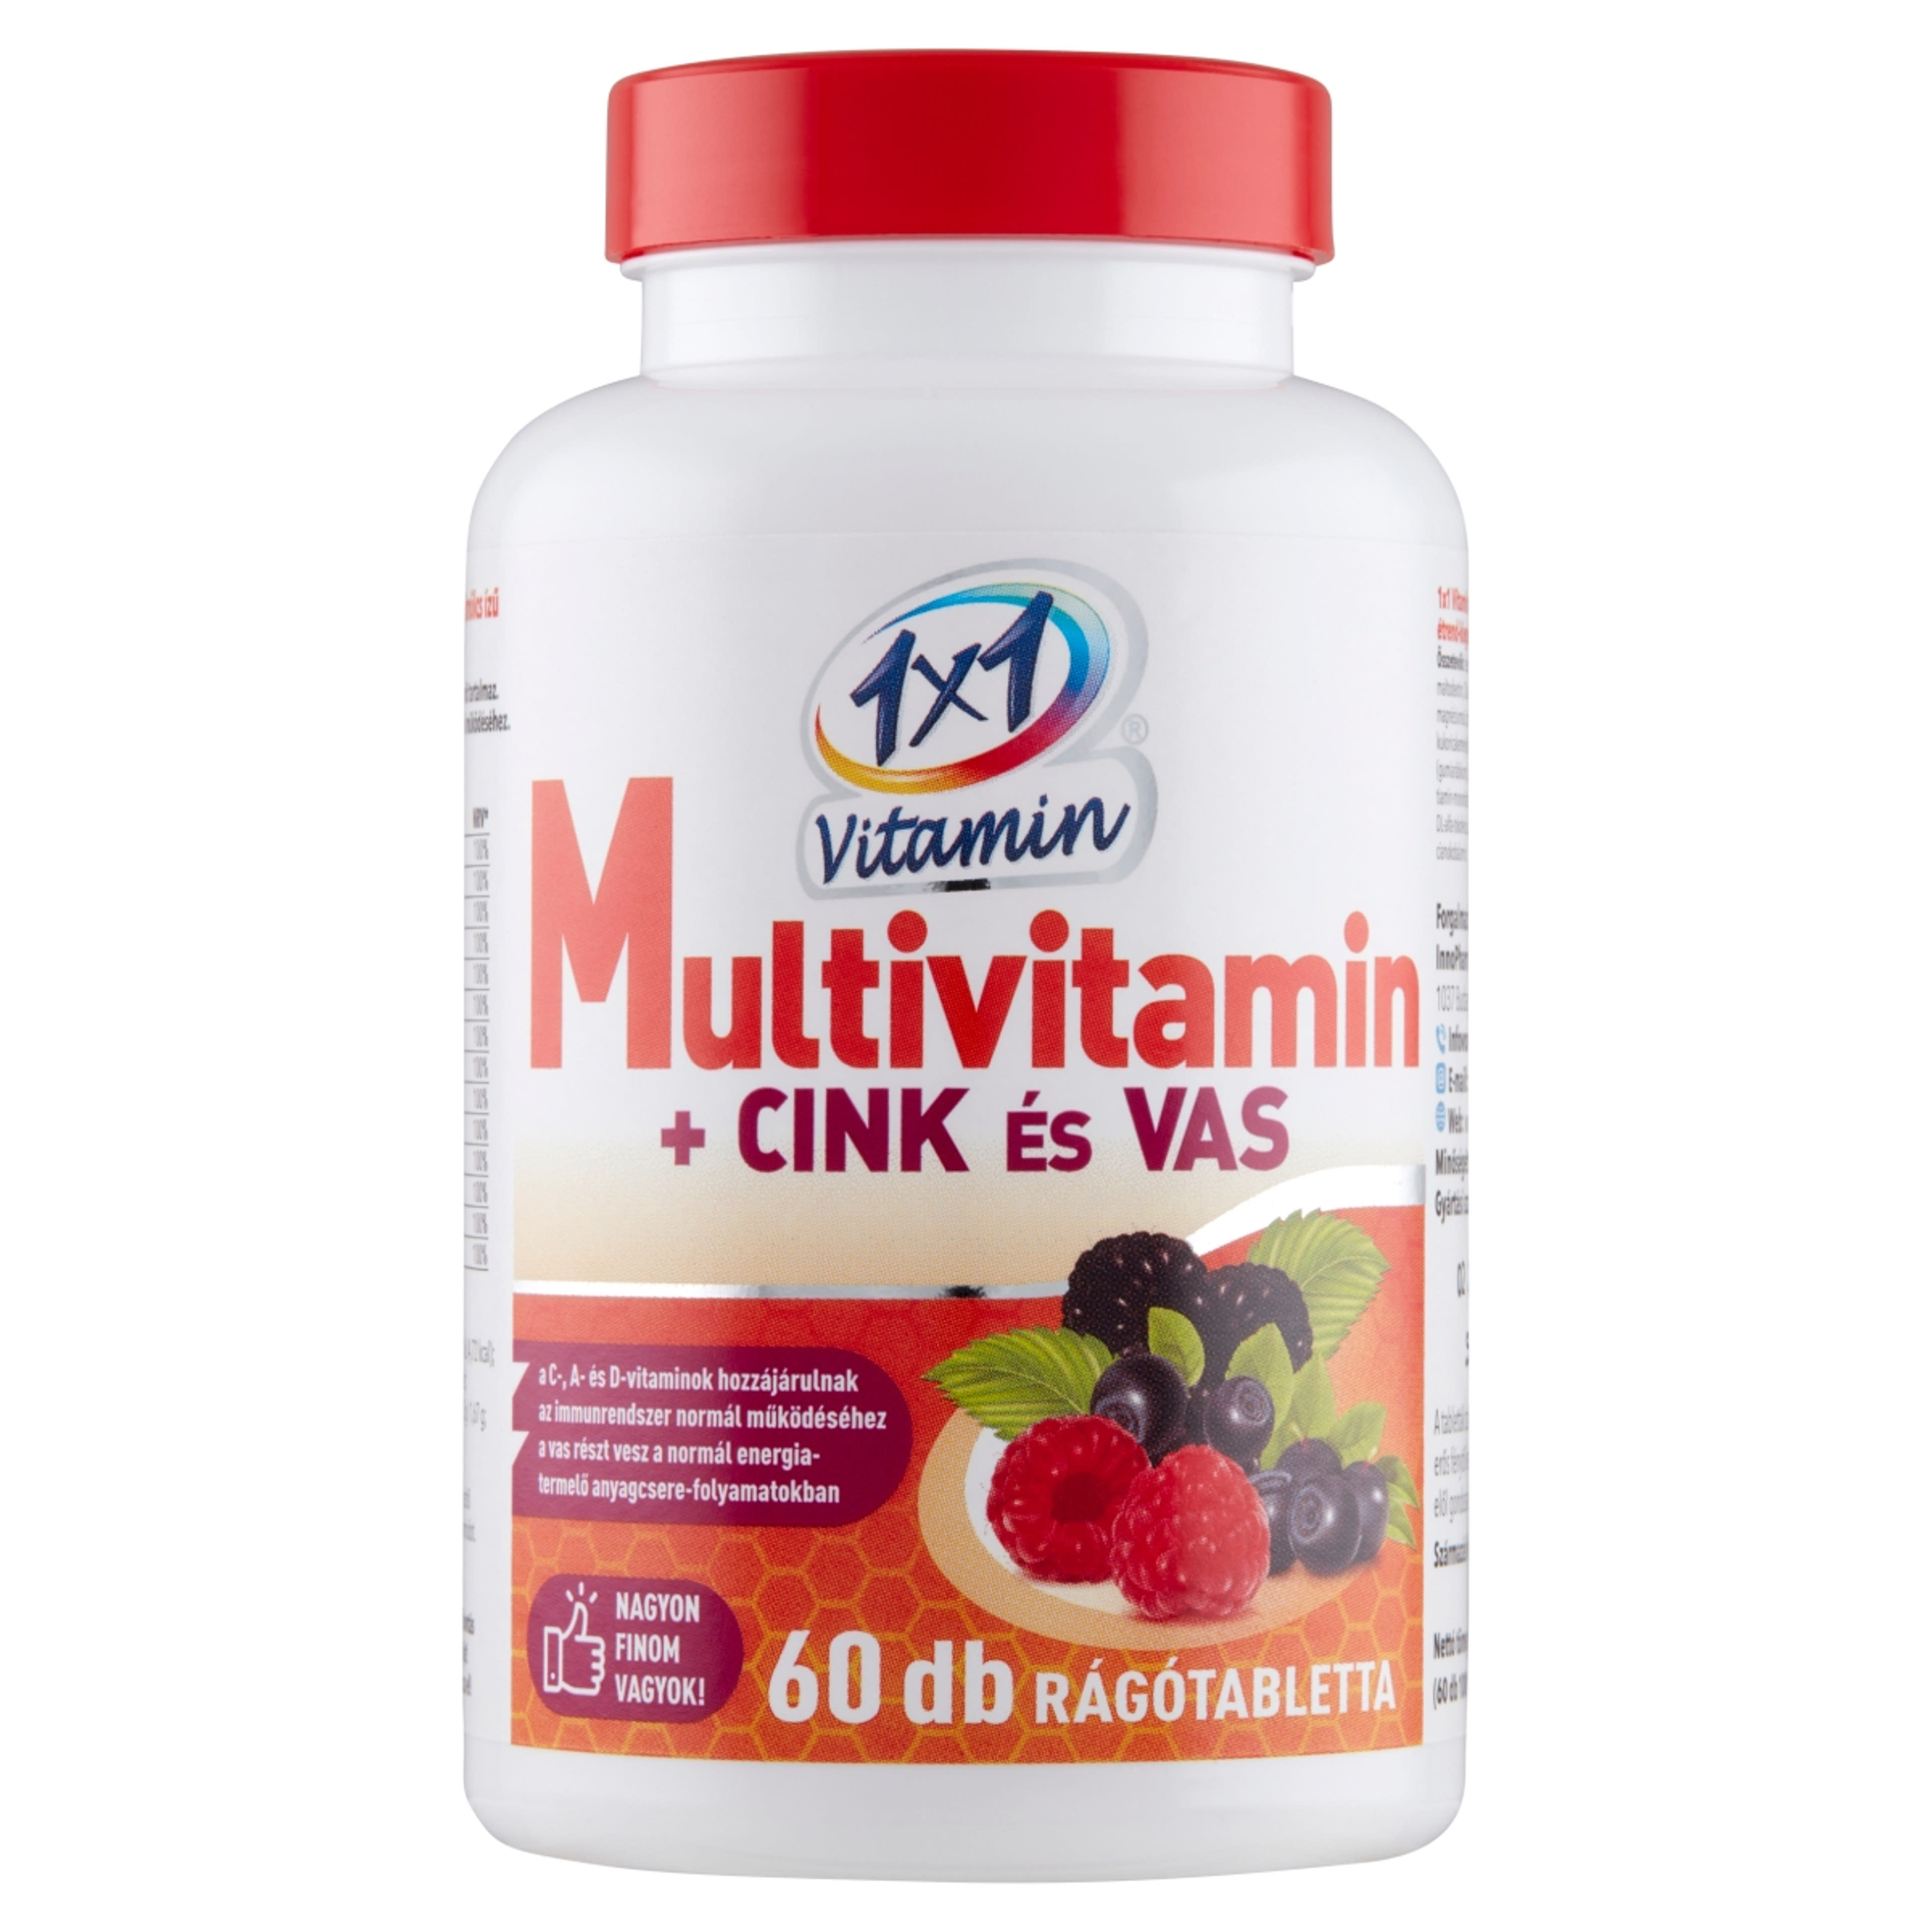 1x1 Vitamin Multivitamin rágótabletta - 60 db